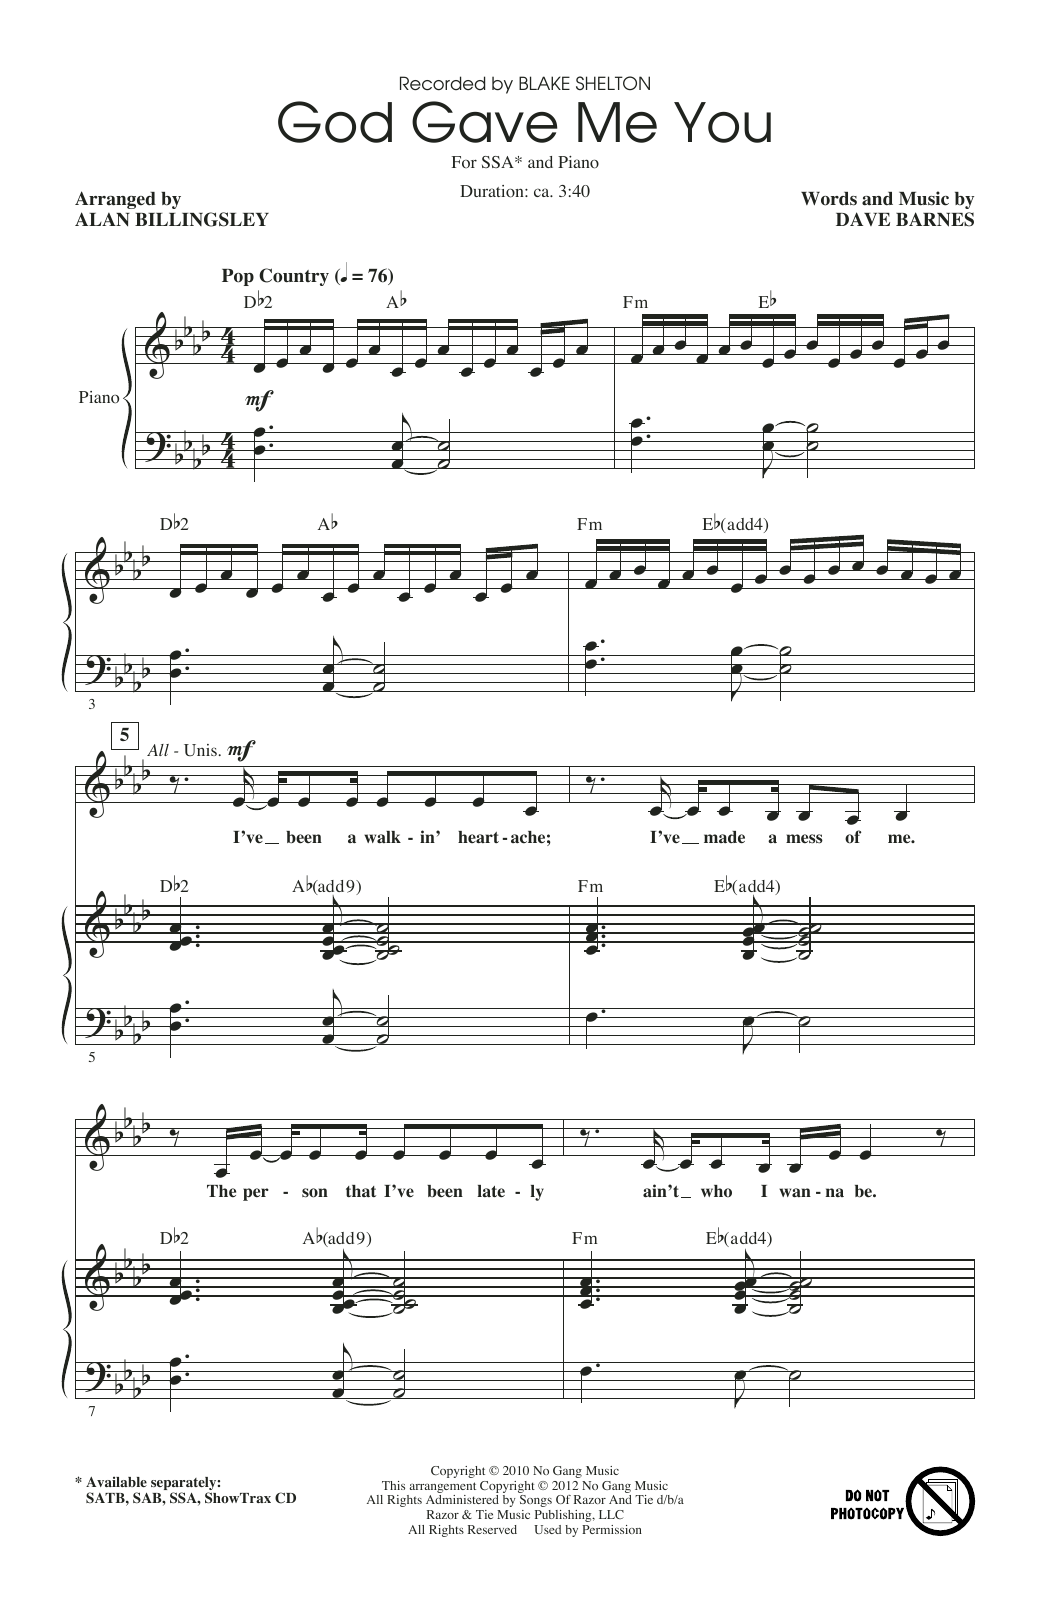 Blake Shelton God Gave Me You (arr. Alan Billingsley) Sheet Music Notes & Chords for SATB Choir - Download or Print PDF